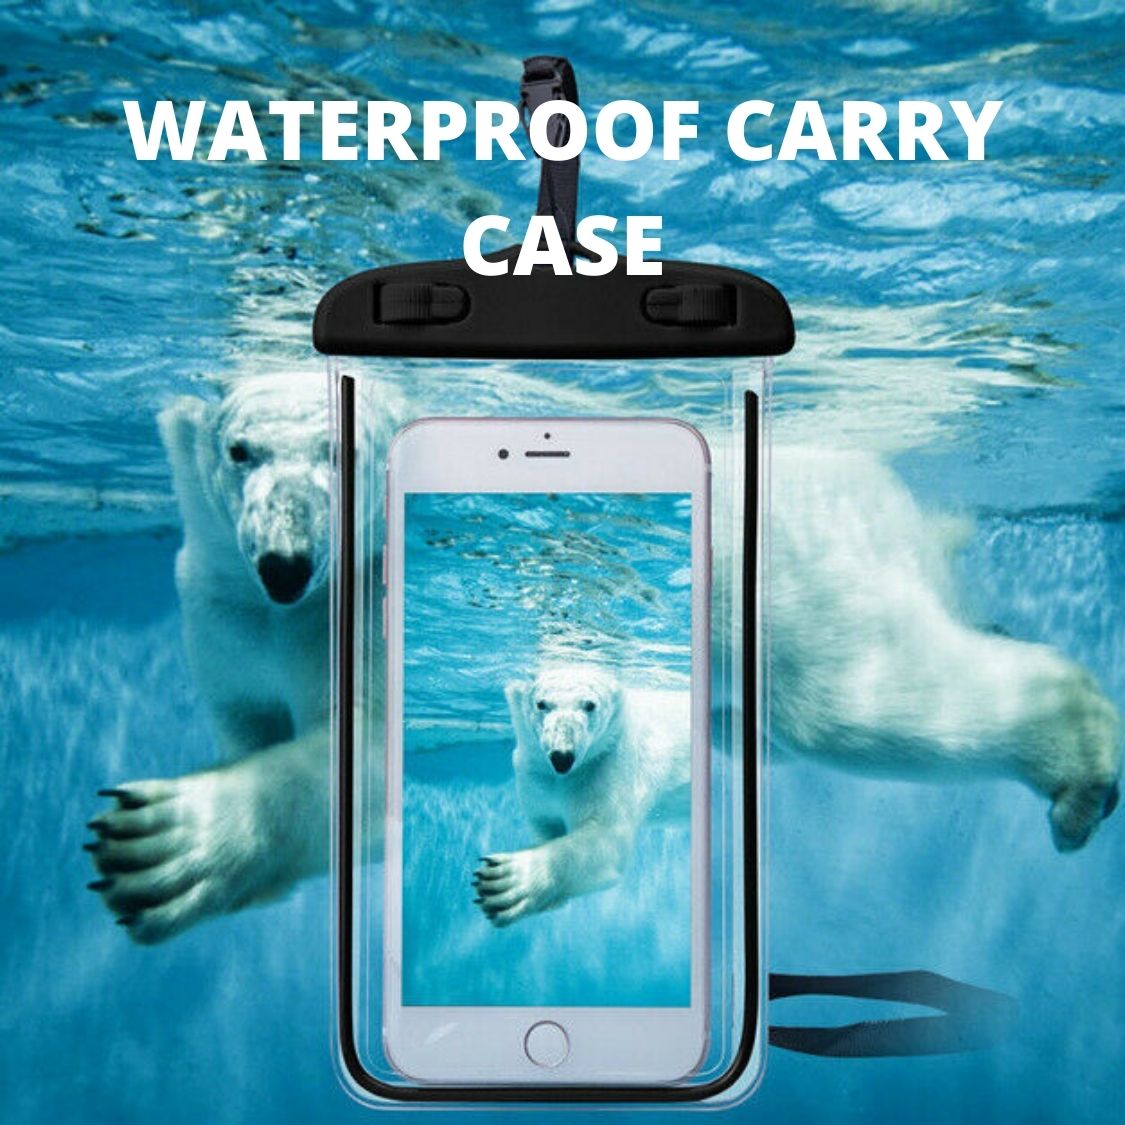 waterproof carry case